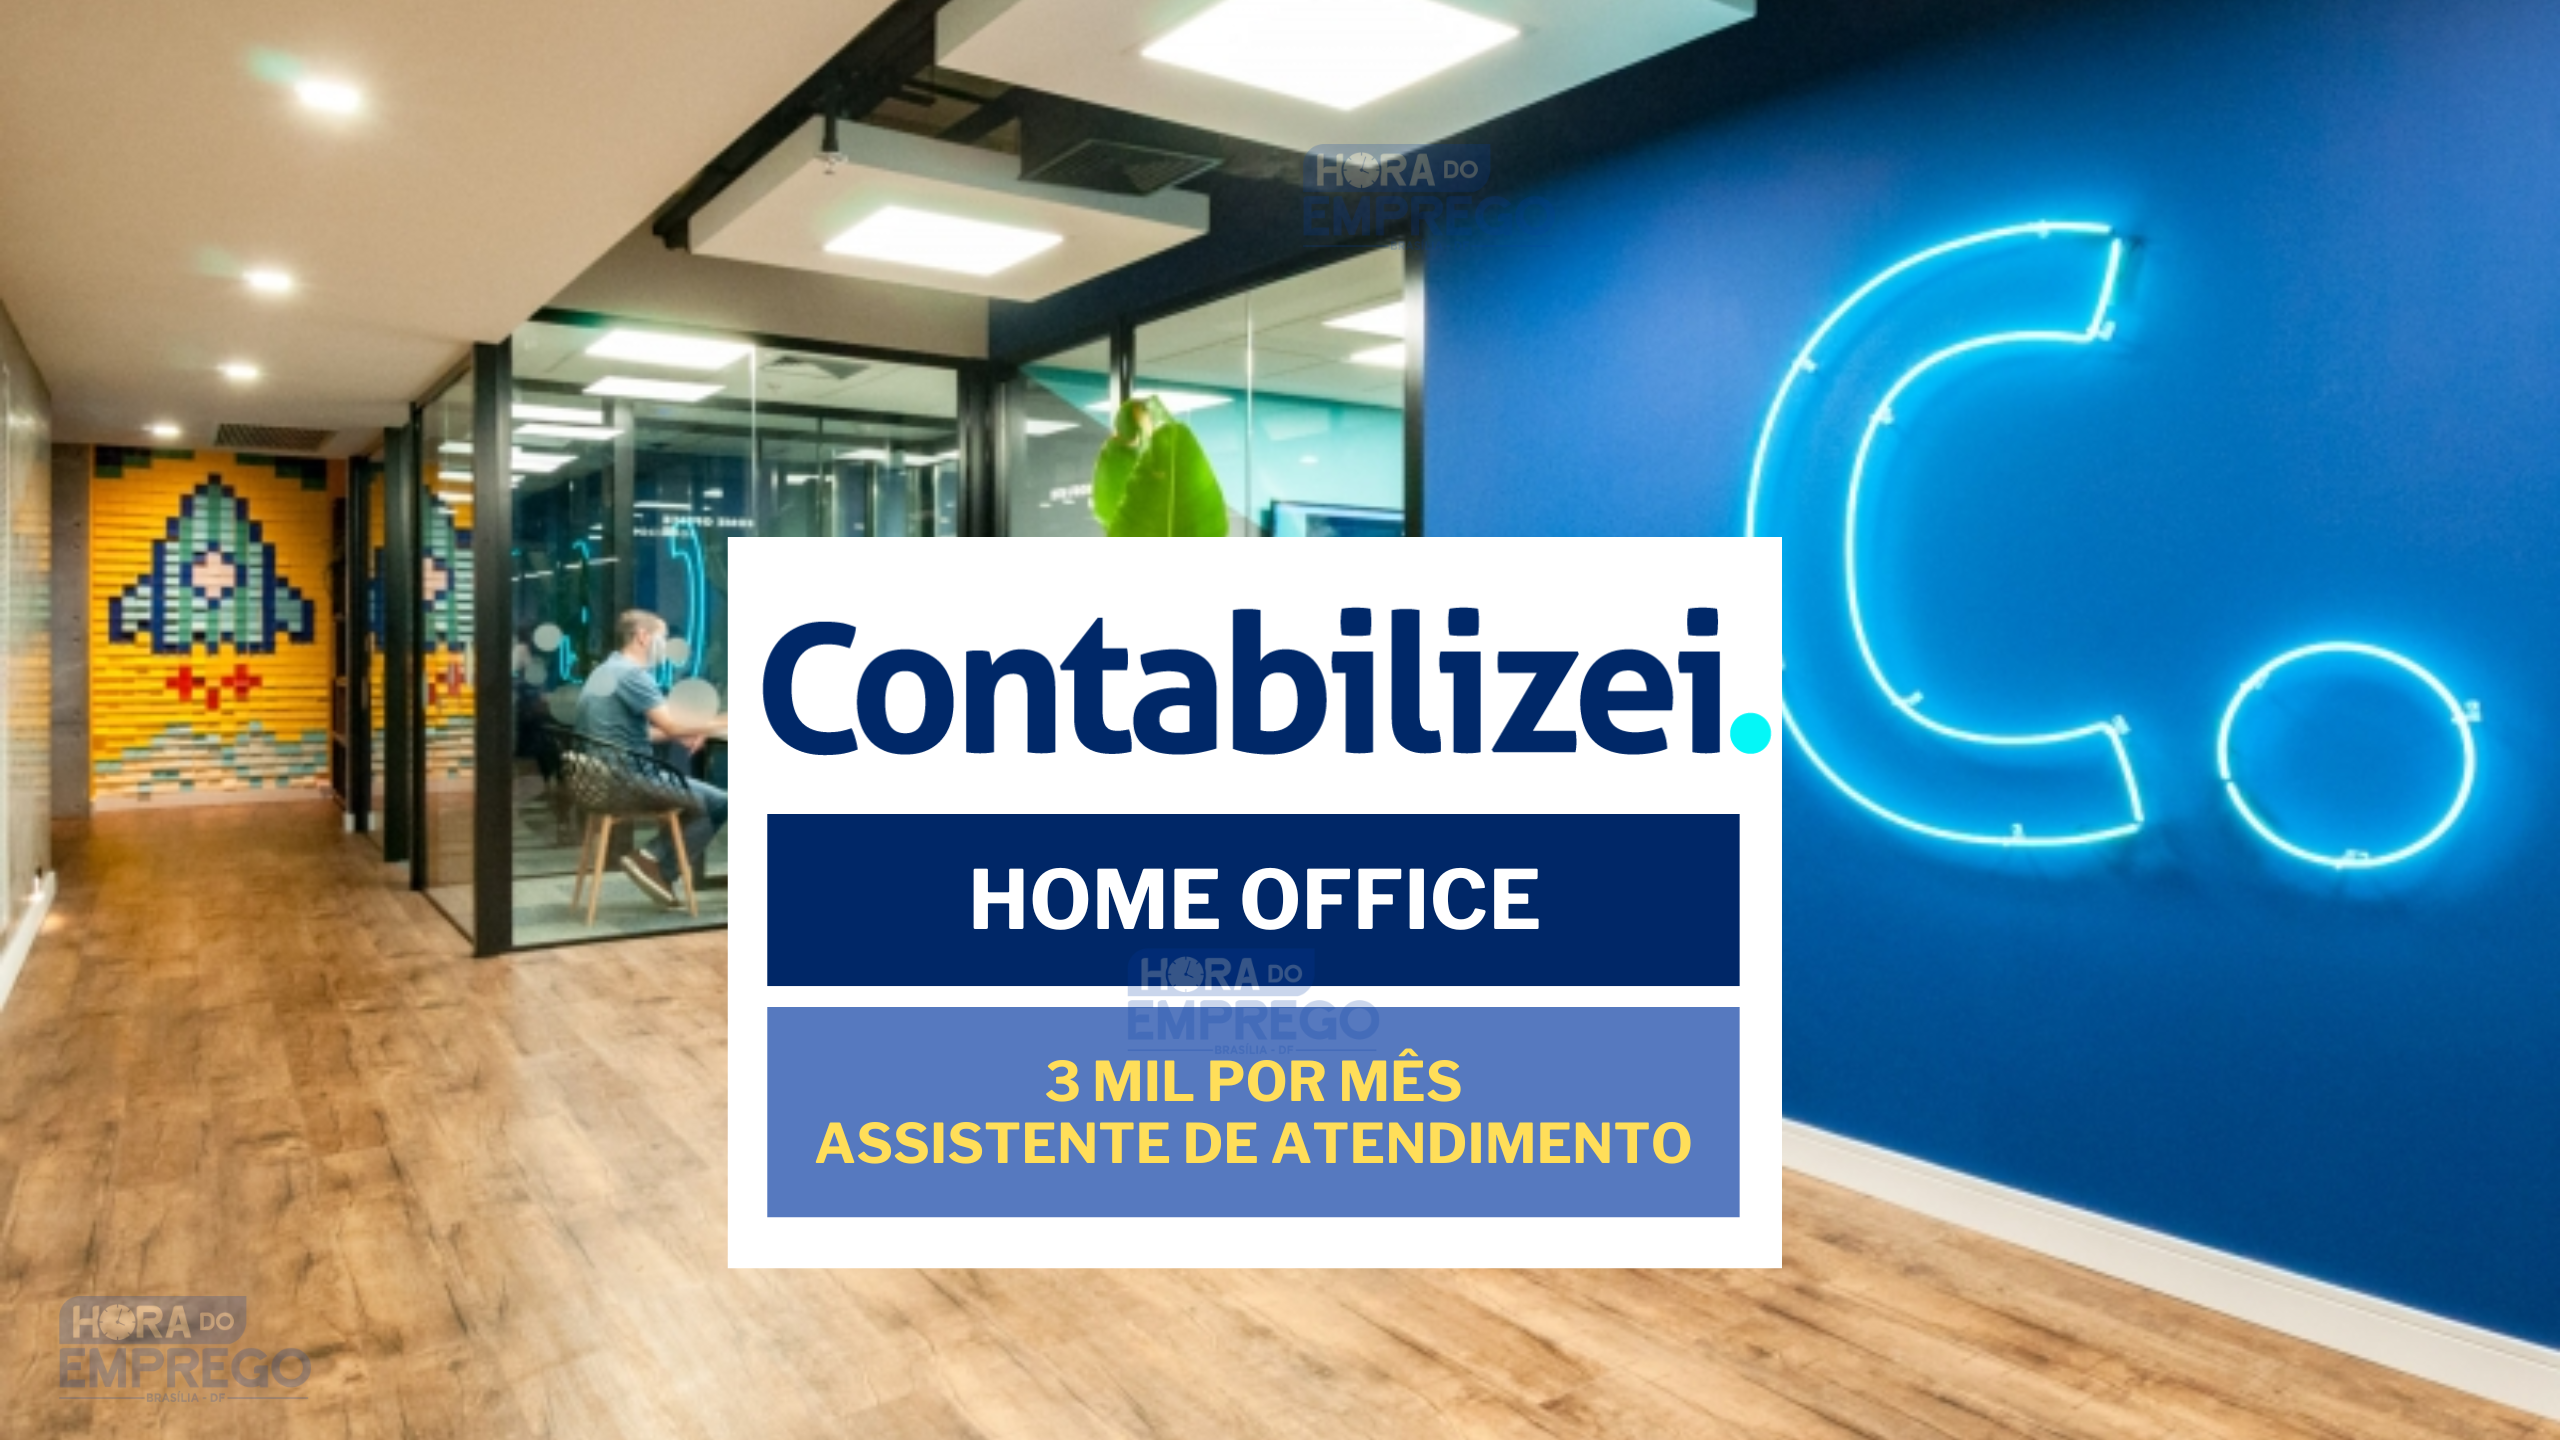 Contabilizei abriu vagas PARA TRABALHAR DE CASA com salário de até 3 MIL para Assistente de Atendimento